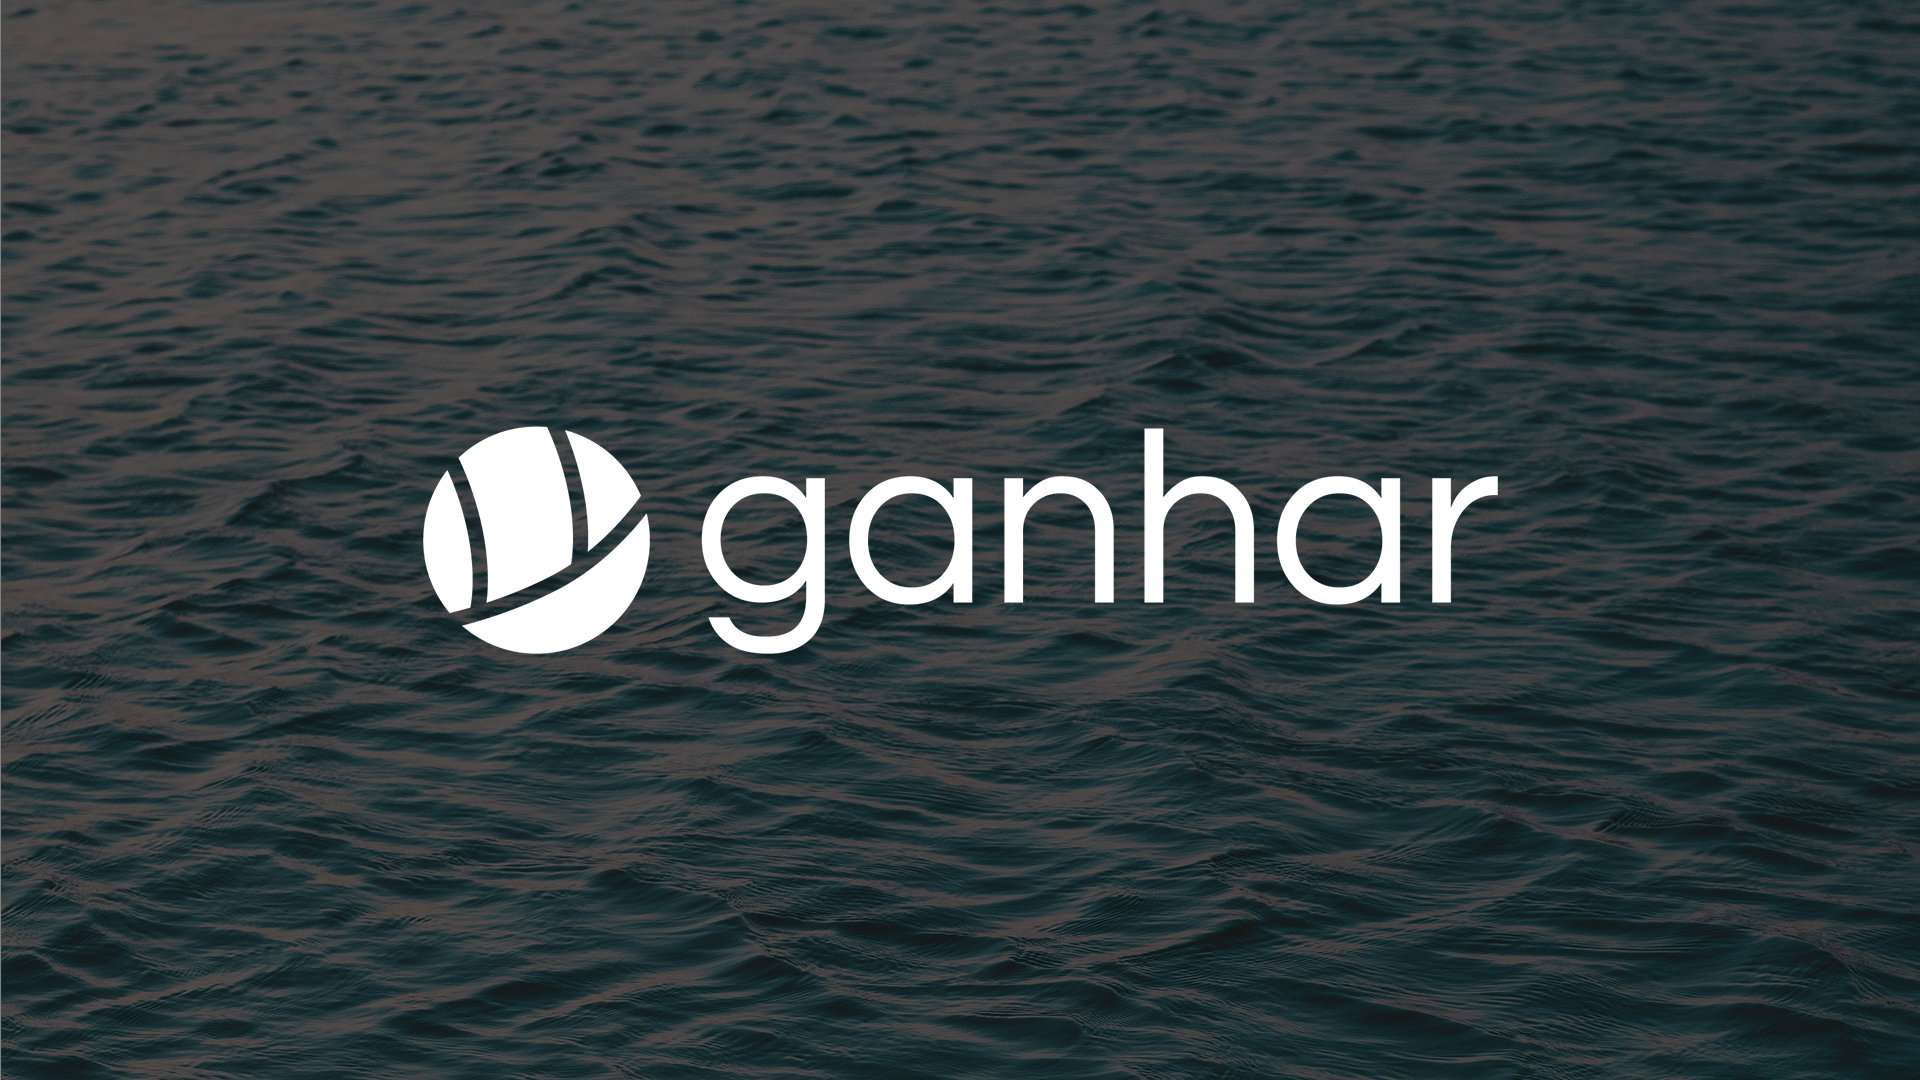 Ganhar bilde av logo på sjø